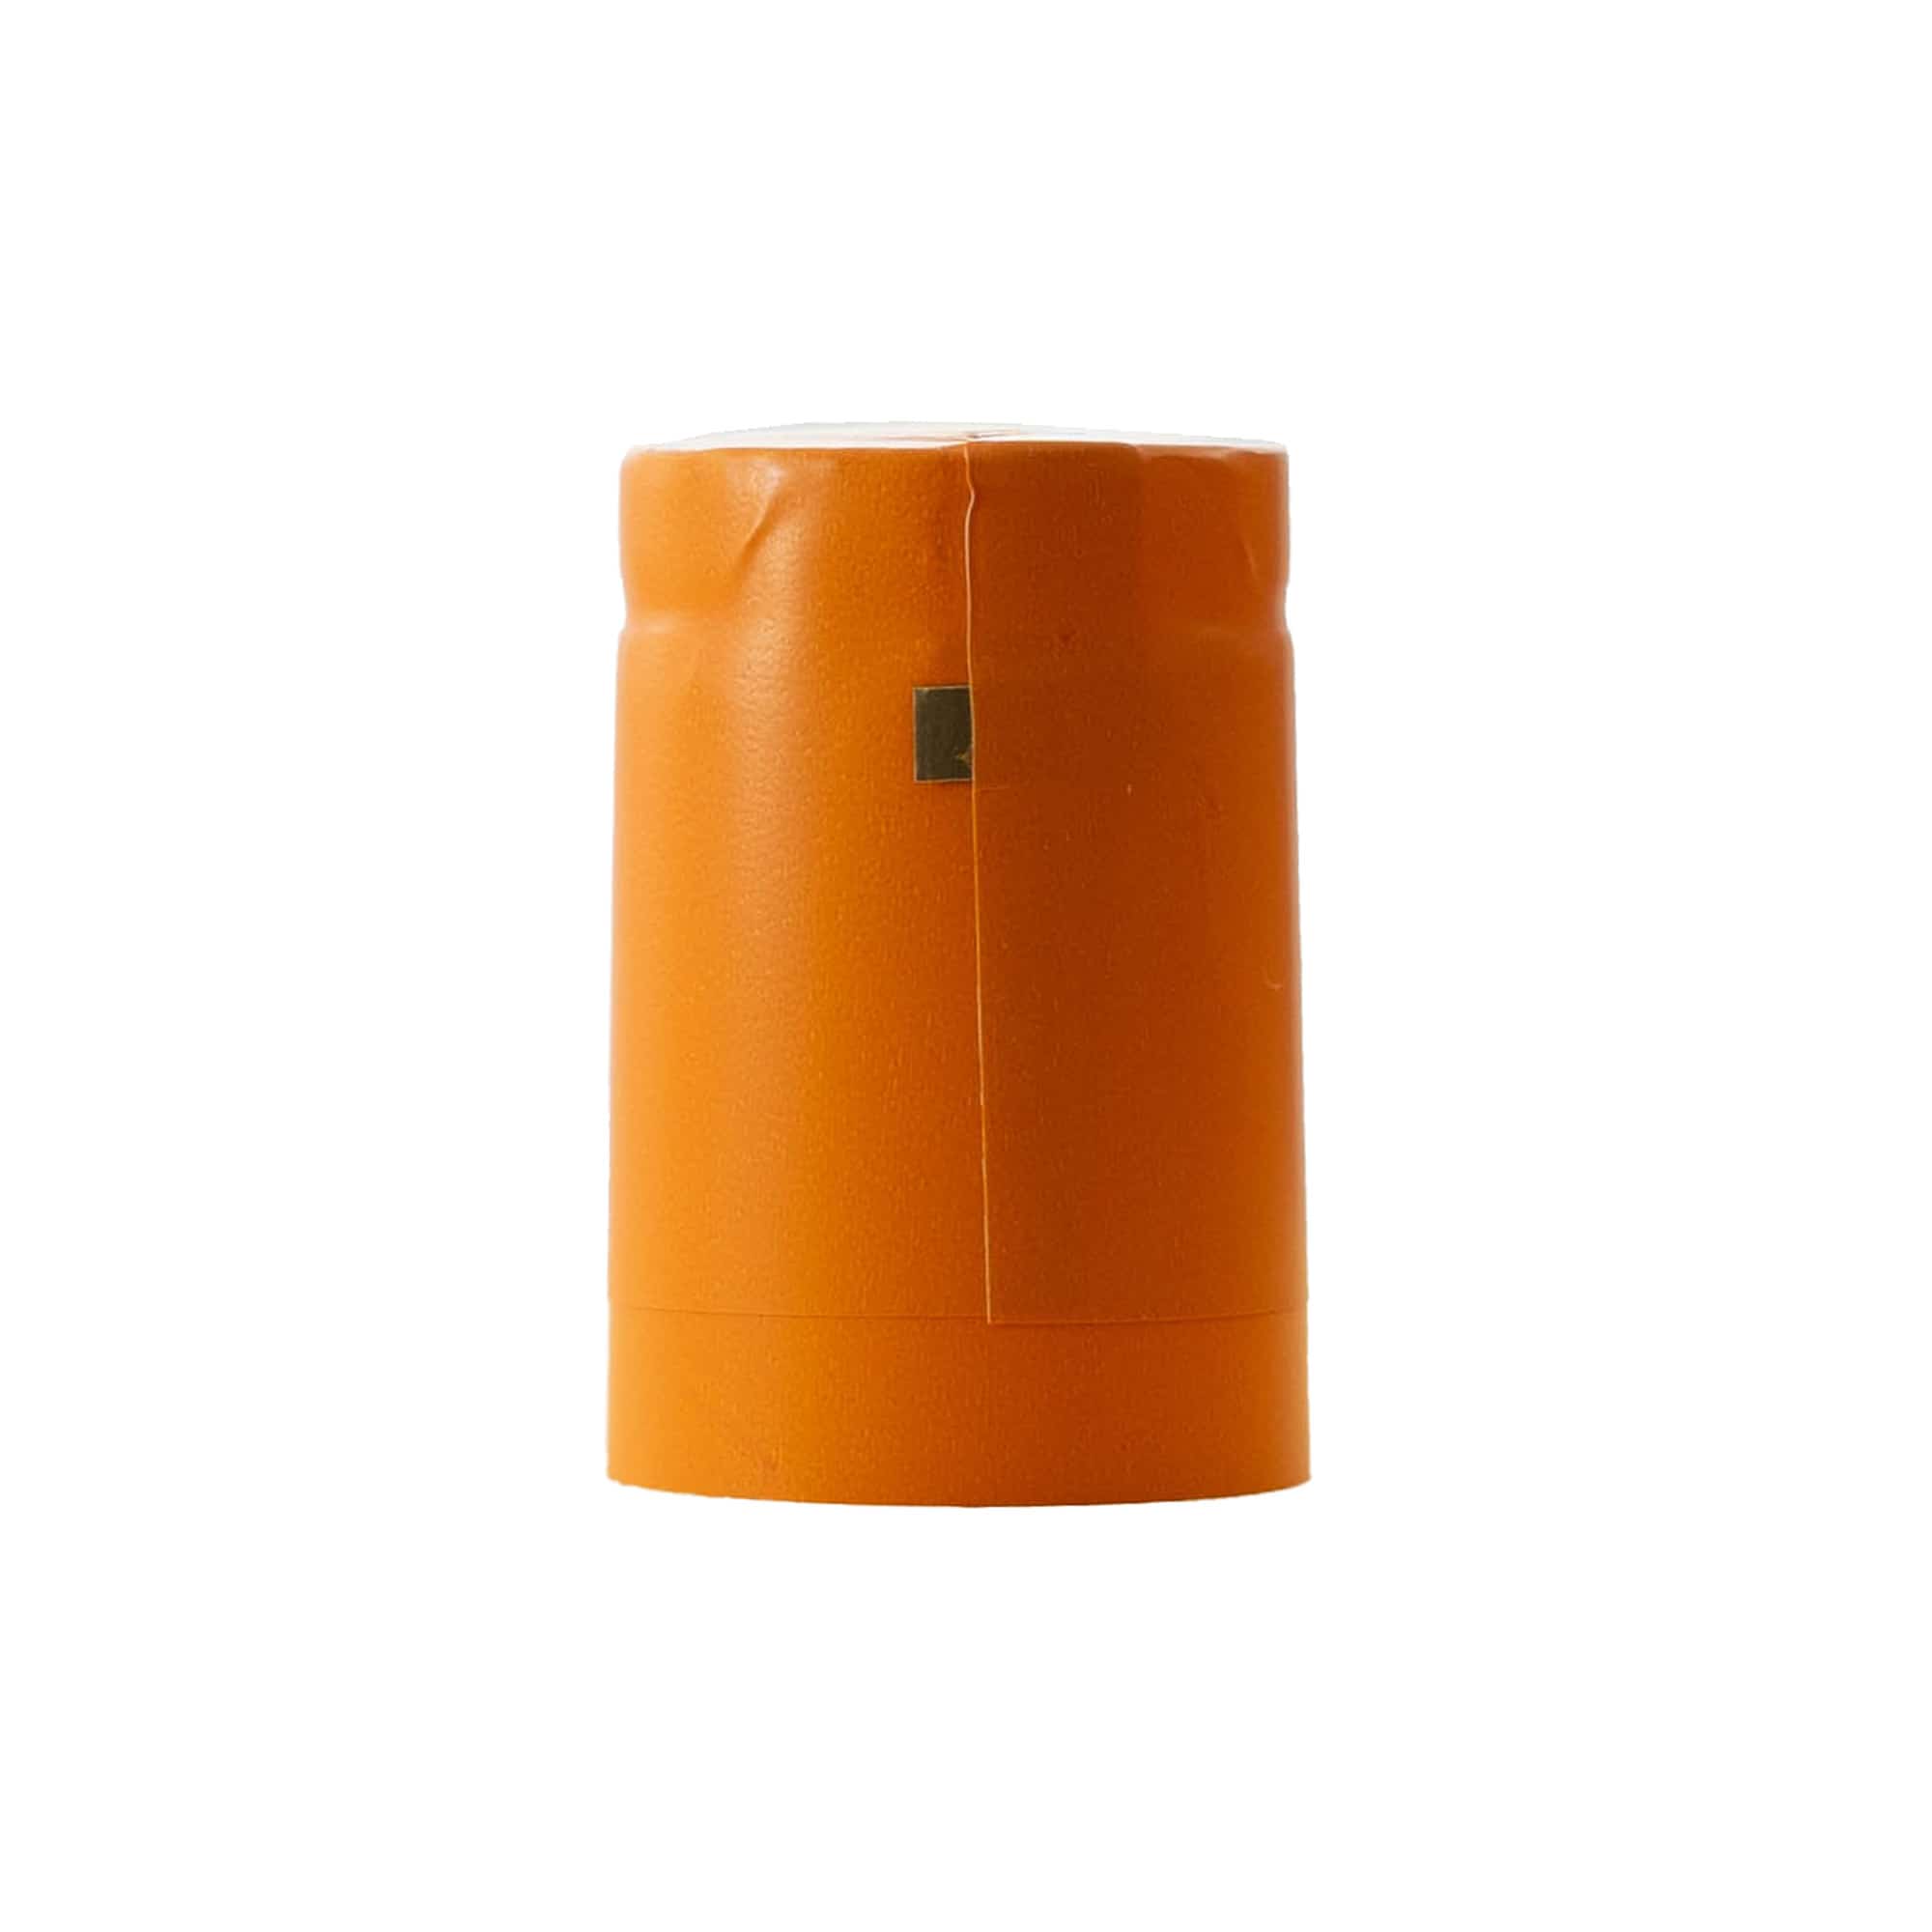 Capsula termoretraibile 32x41, plastica PVC, arancione